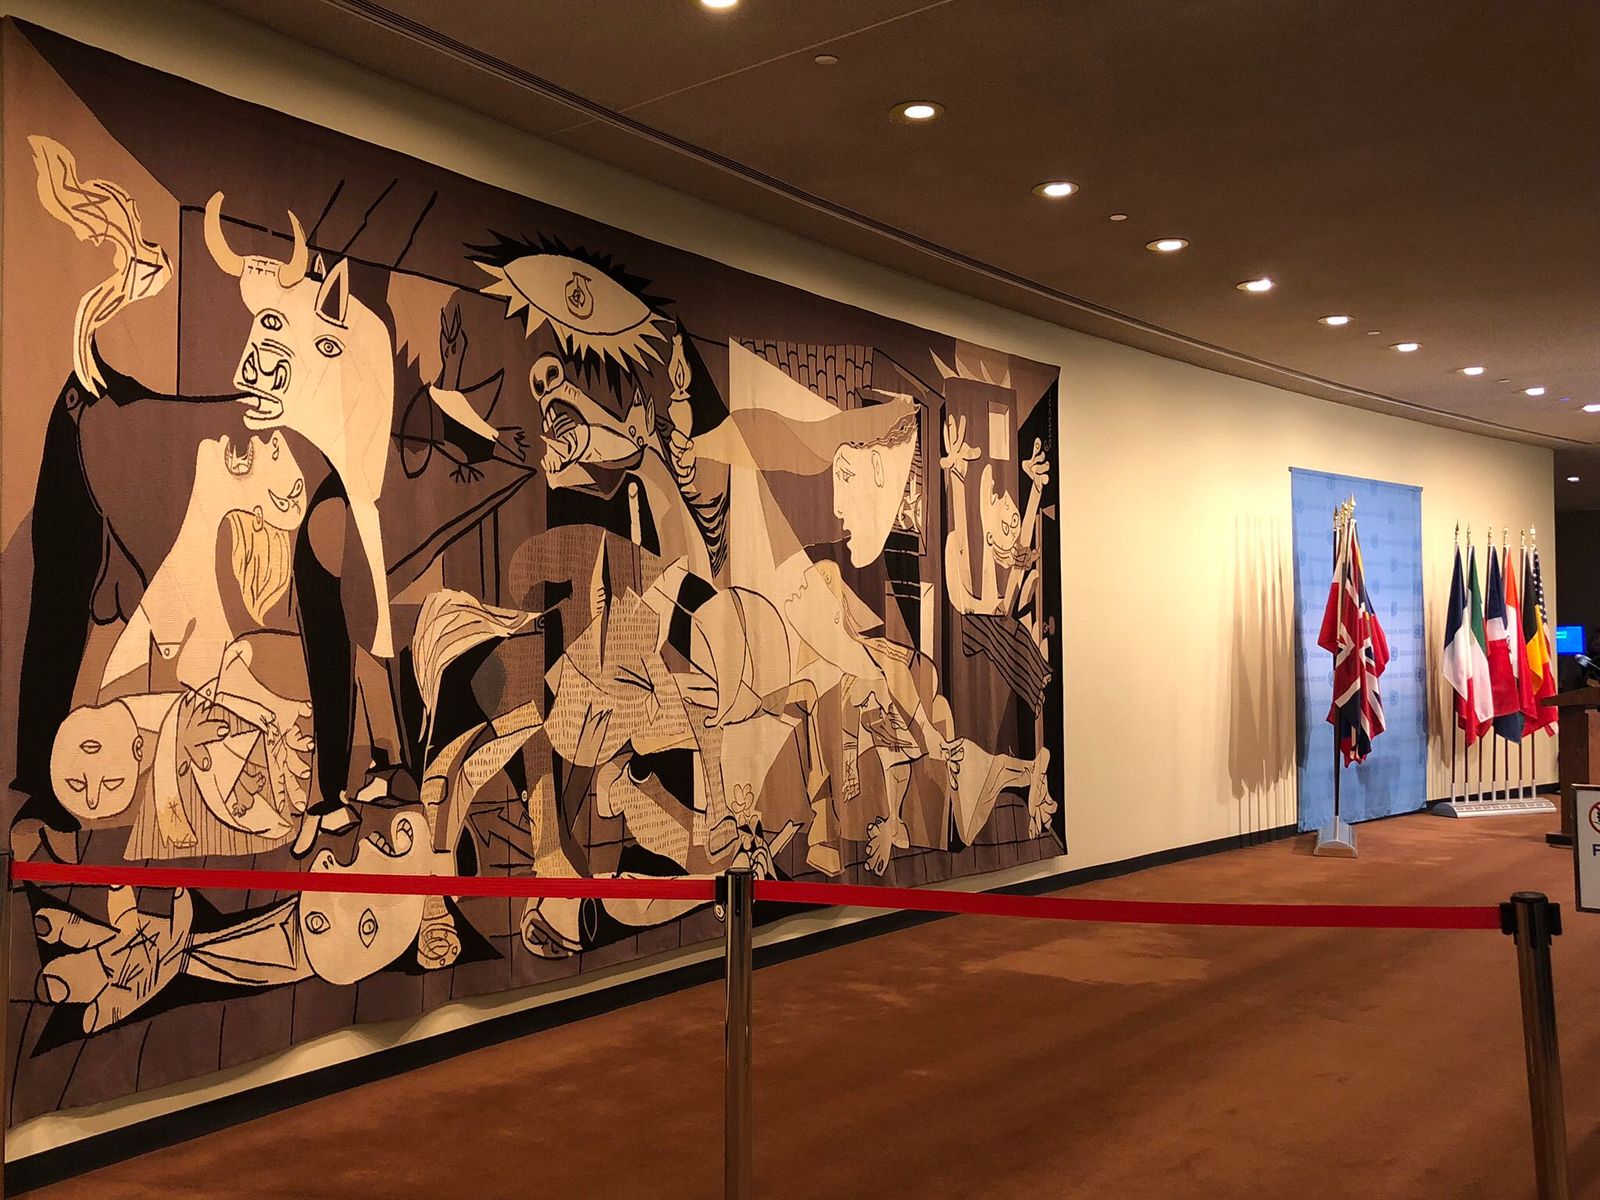 منسوجة كبيرة للوحة غيرنيكا لبيكاسو بعدما بقيت عند مدخل مجلس الأمن التابع للأمم المتحدة لأكثر من ثلاثة عقود - twitter